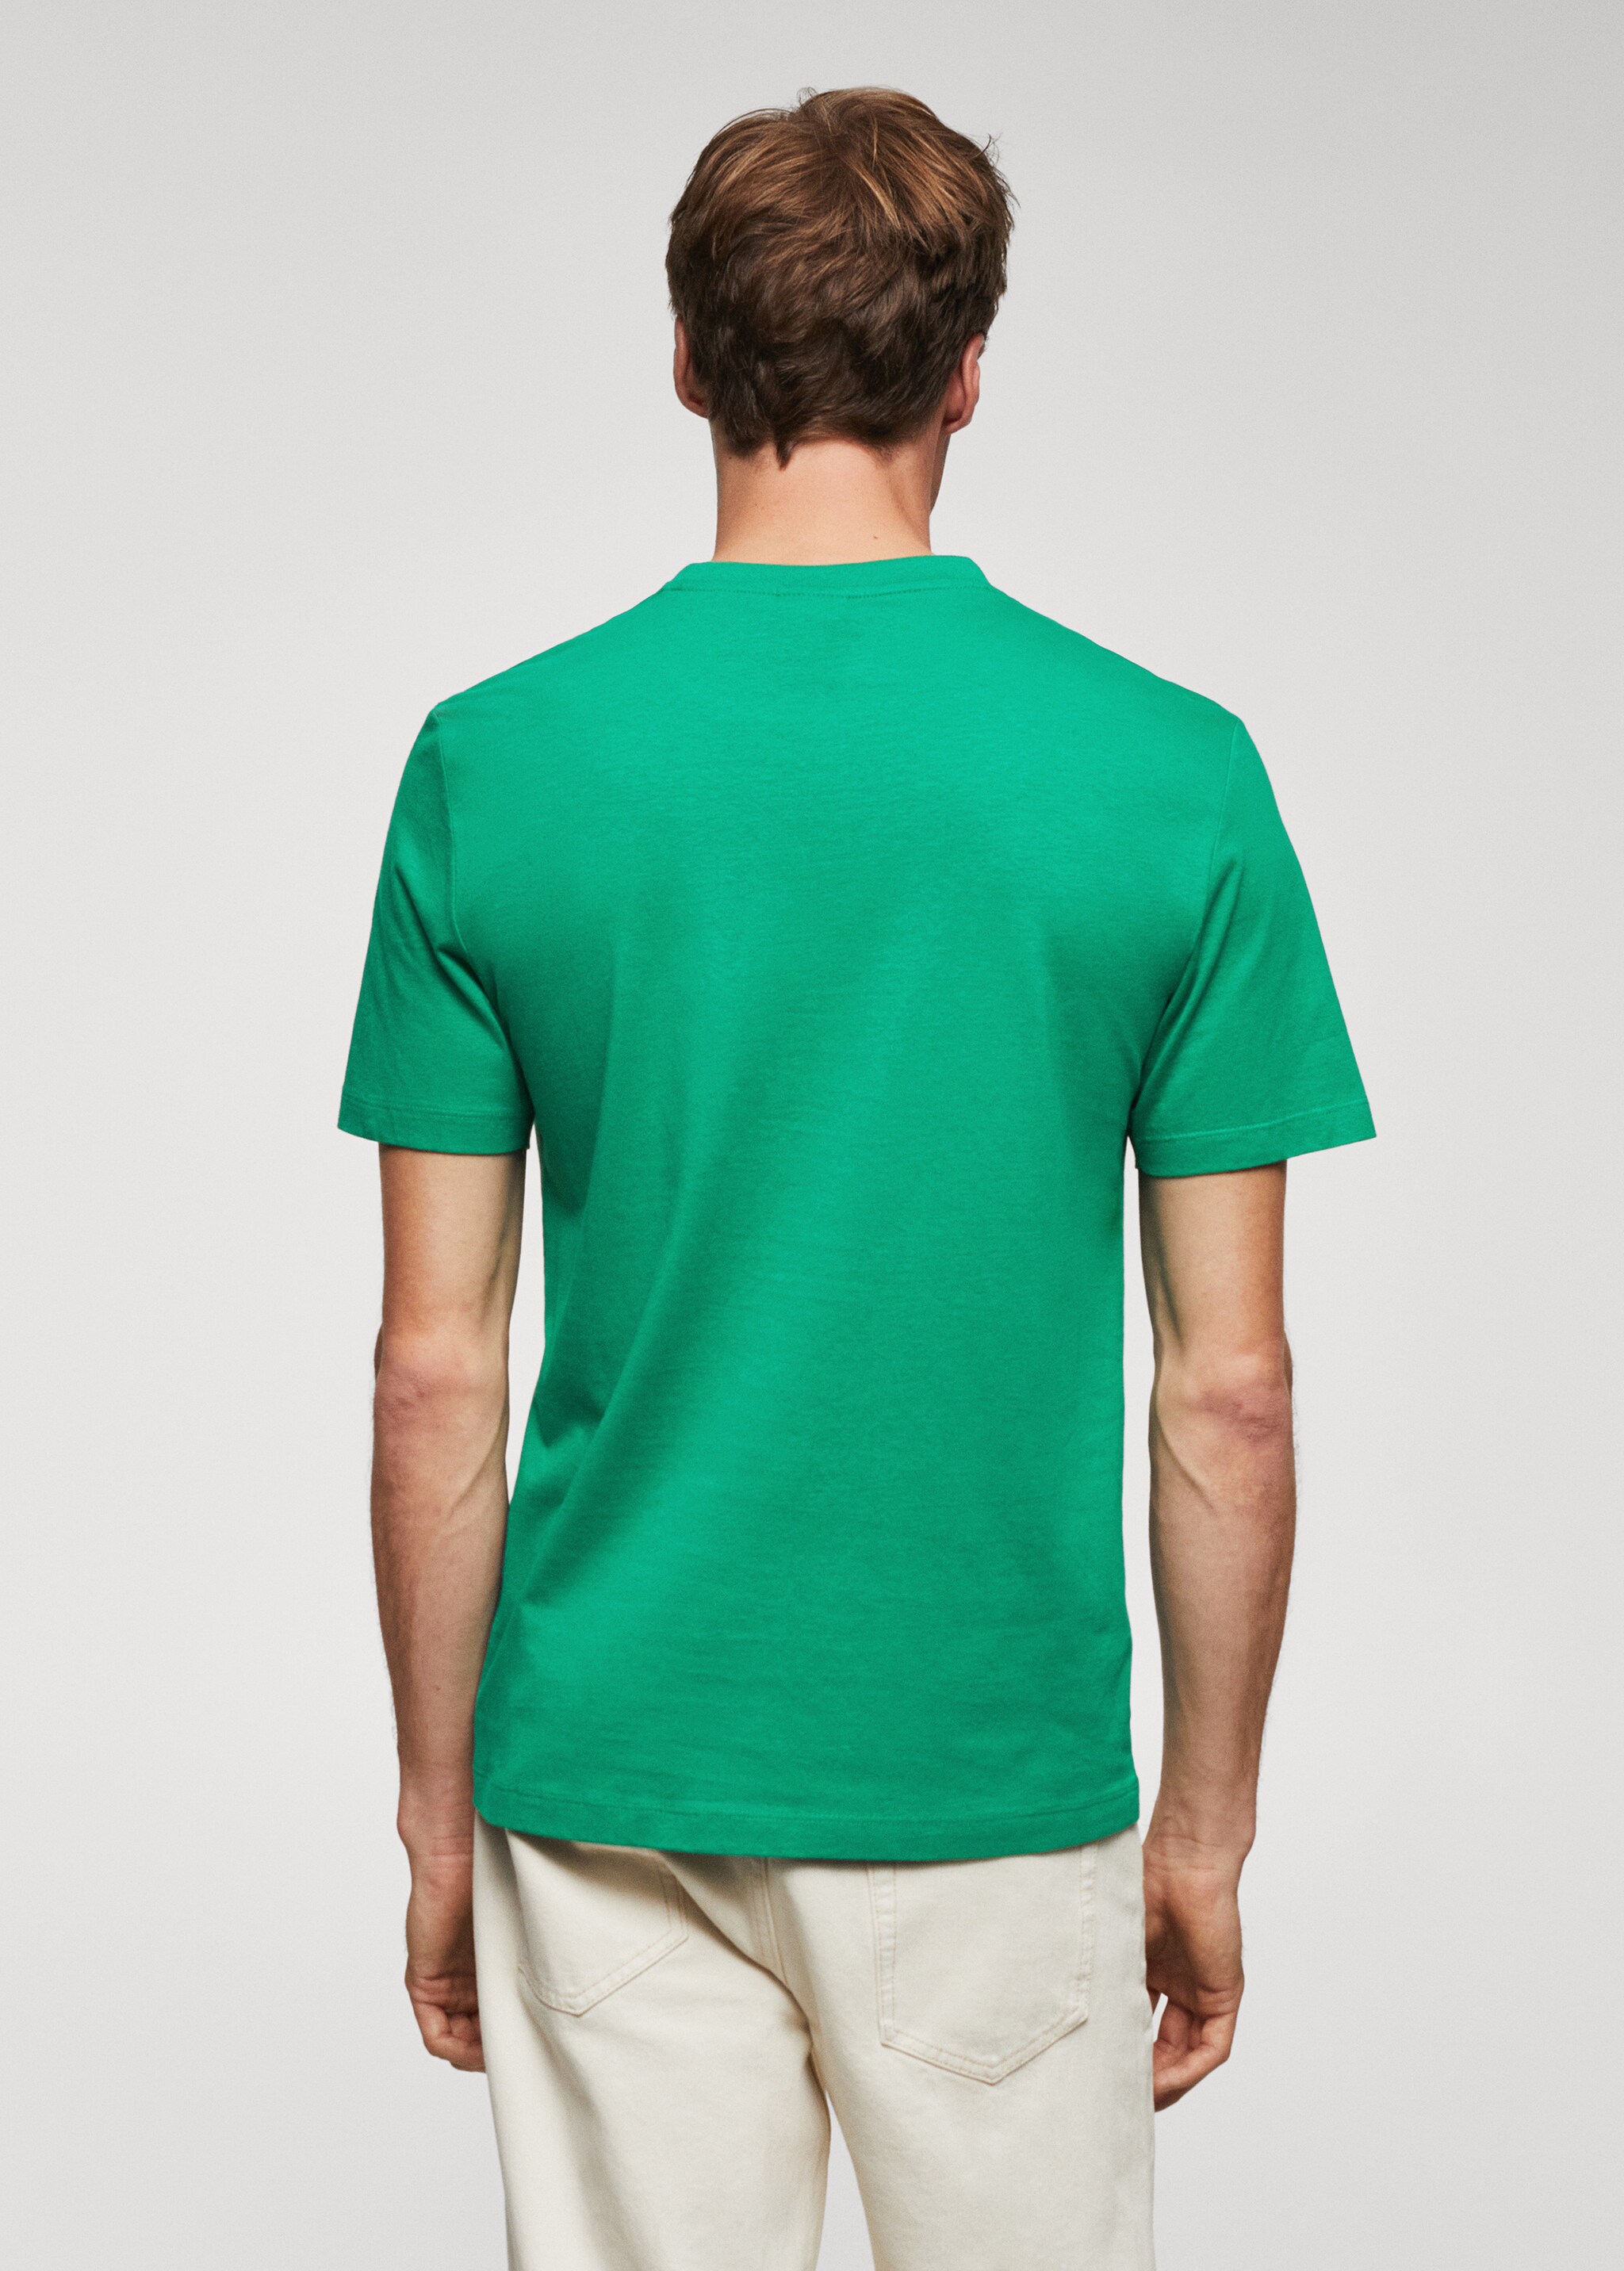 Camiseta logo 100% algodón - Reverso del artículo